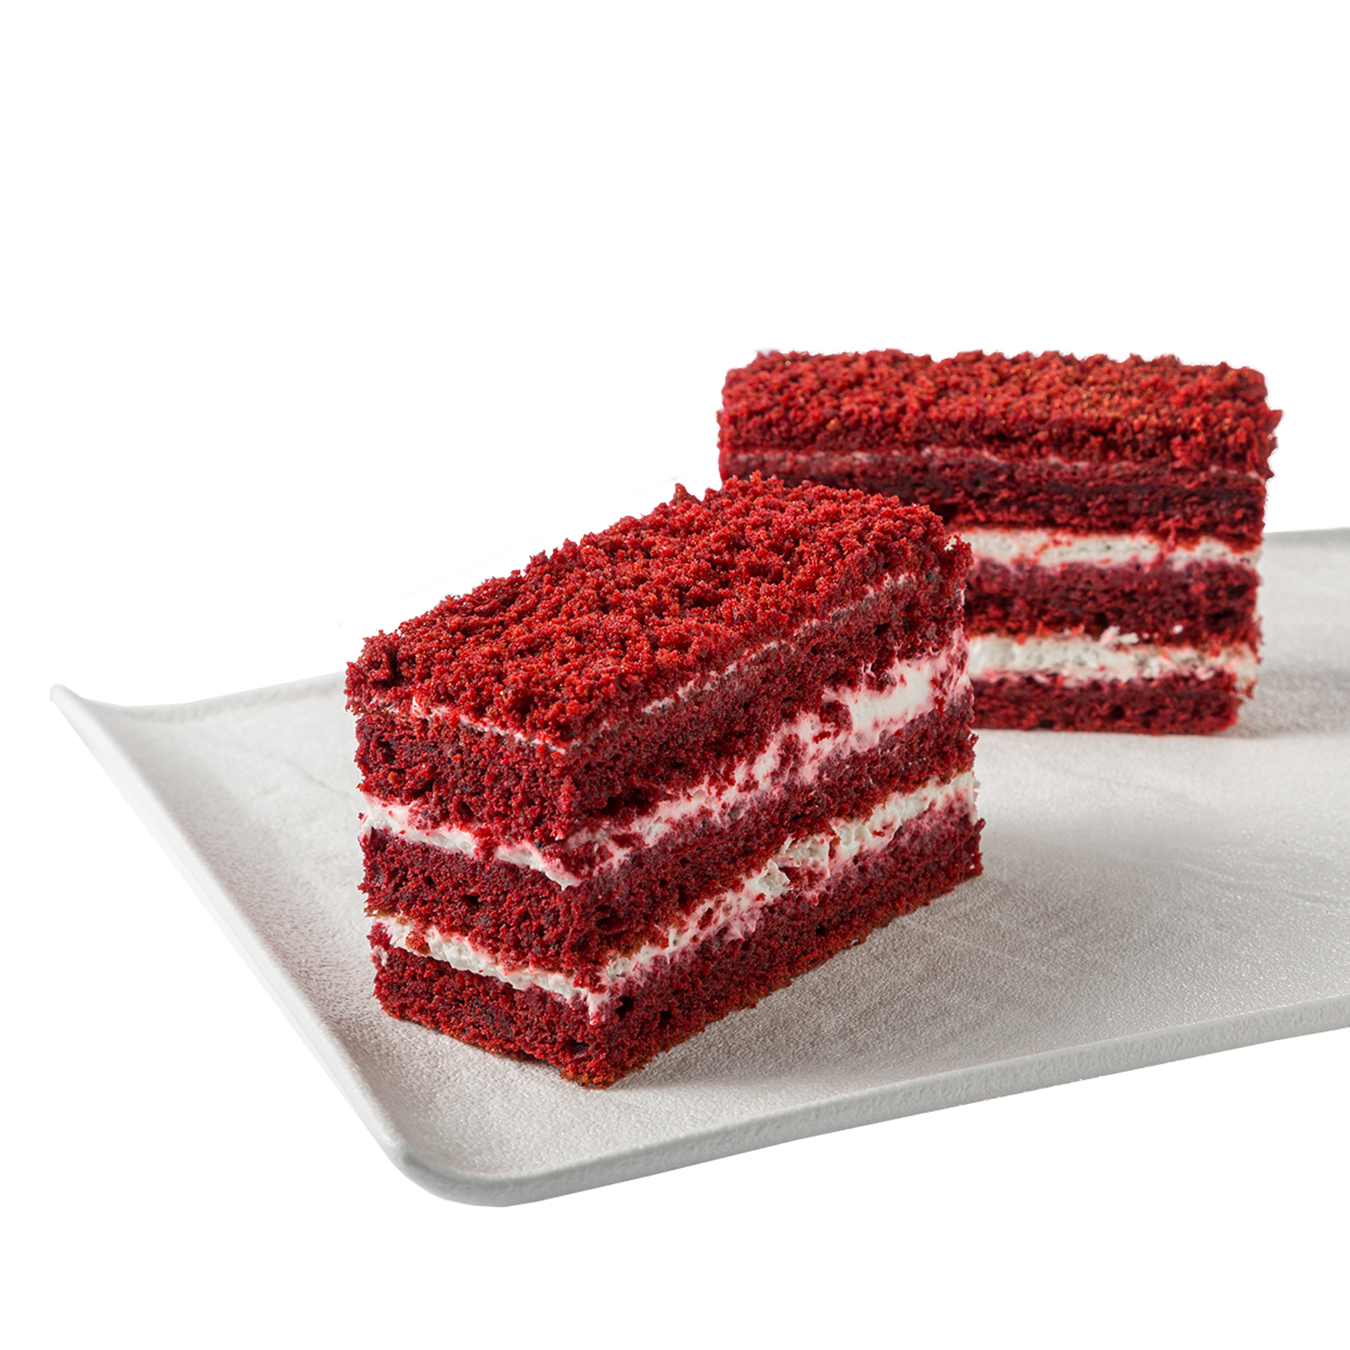 Red velvet cake 120g